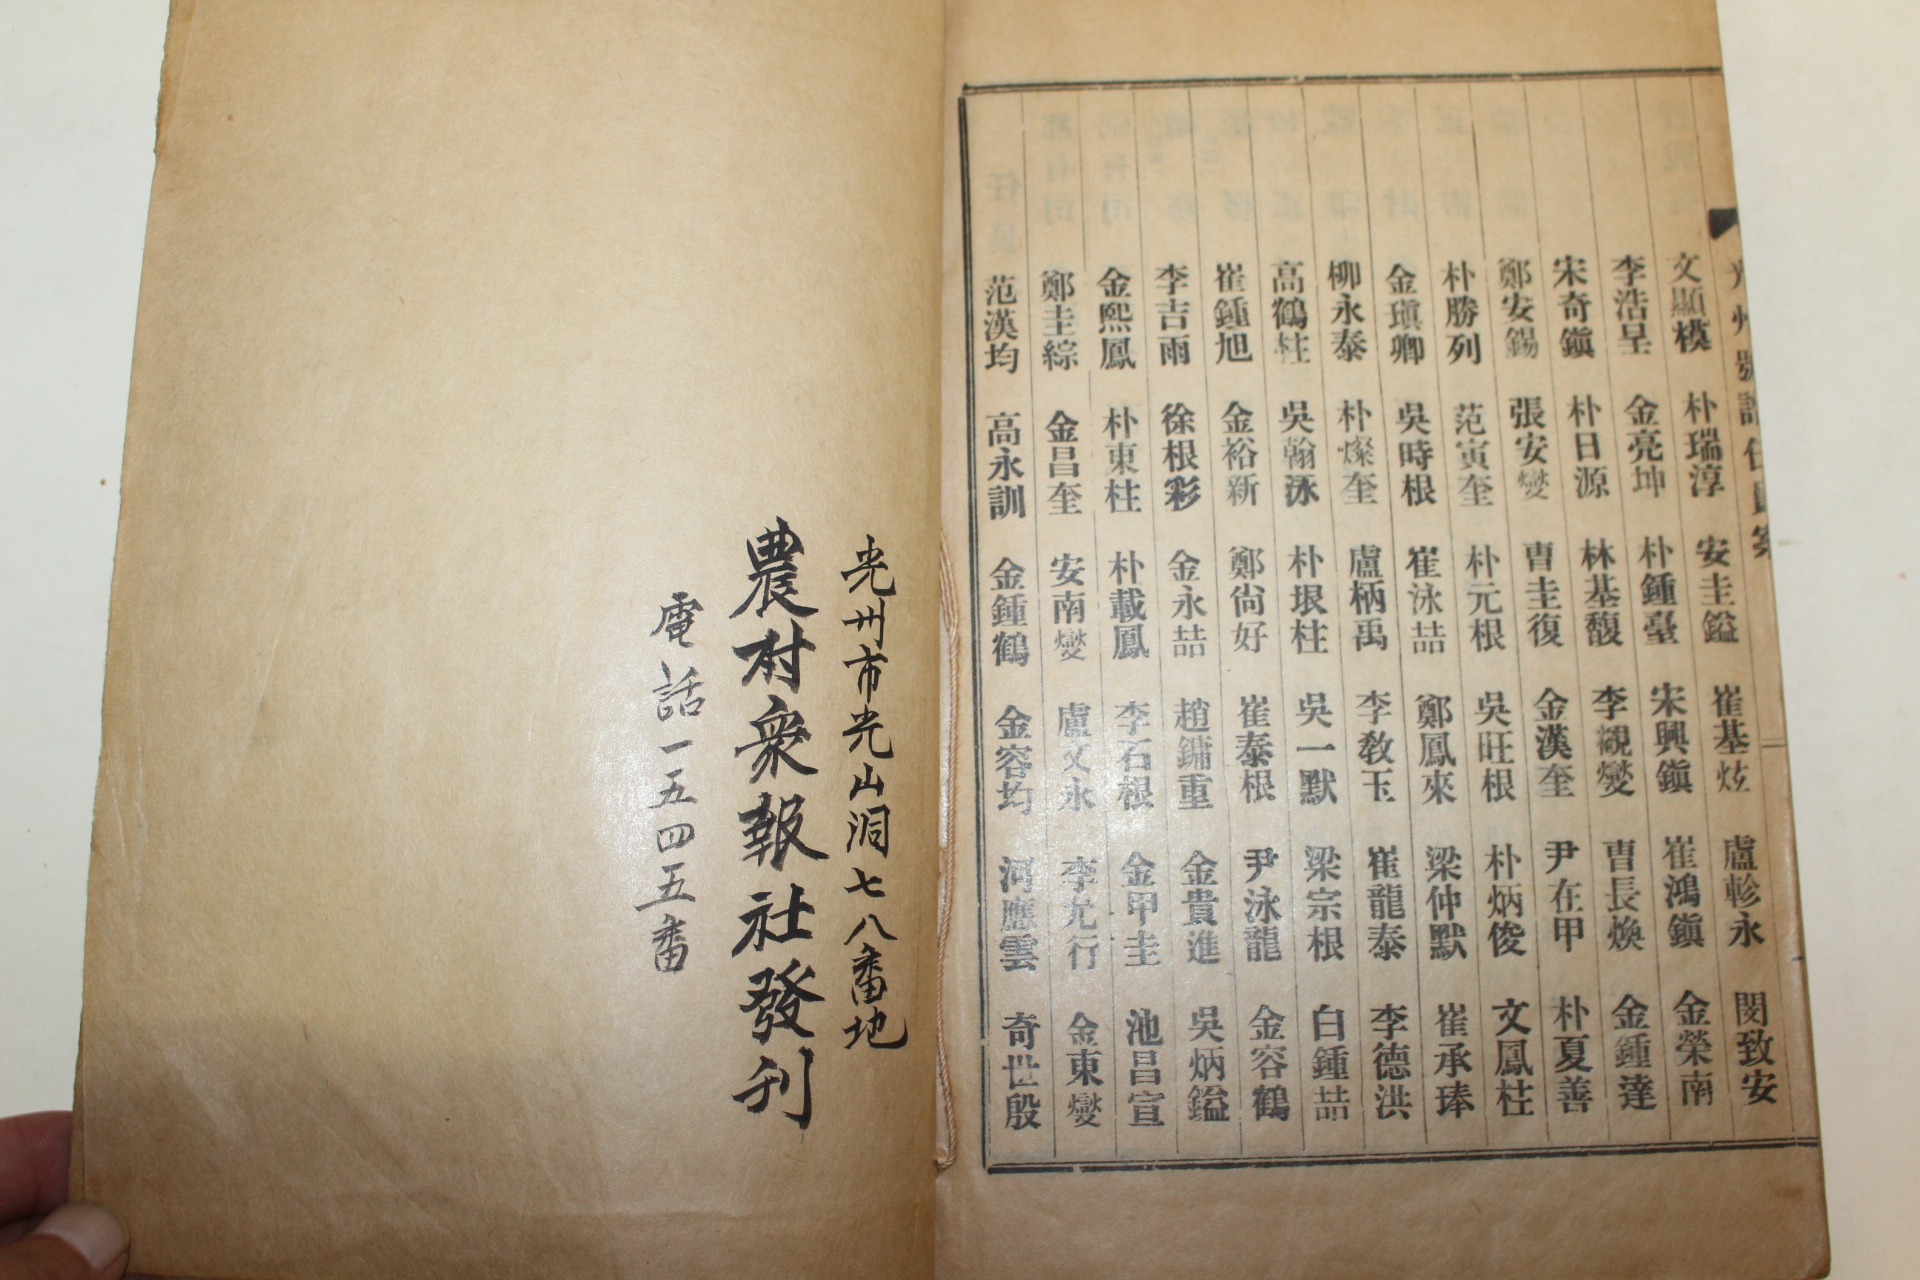 1959년 신연활자본 광주호보(光州號譜) 1책완질